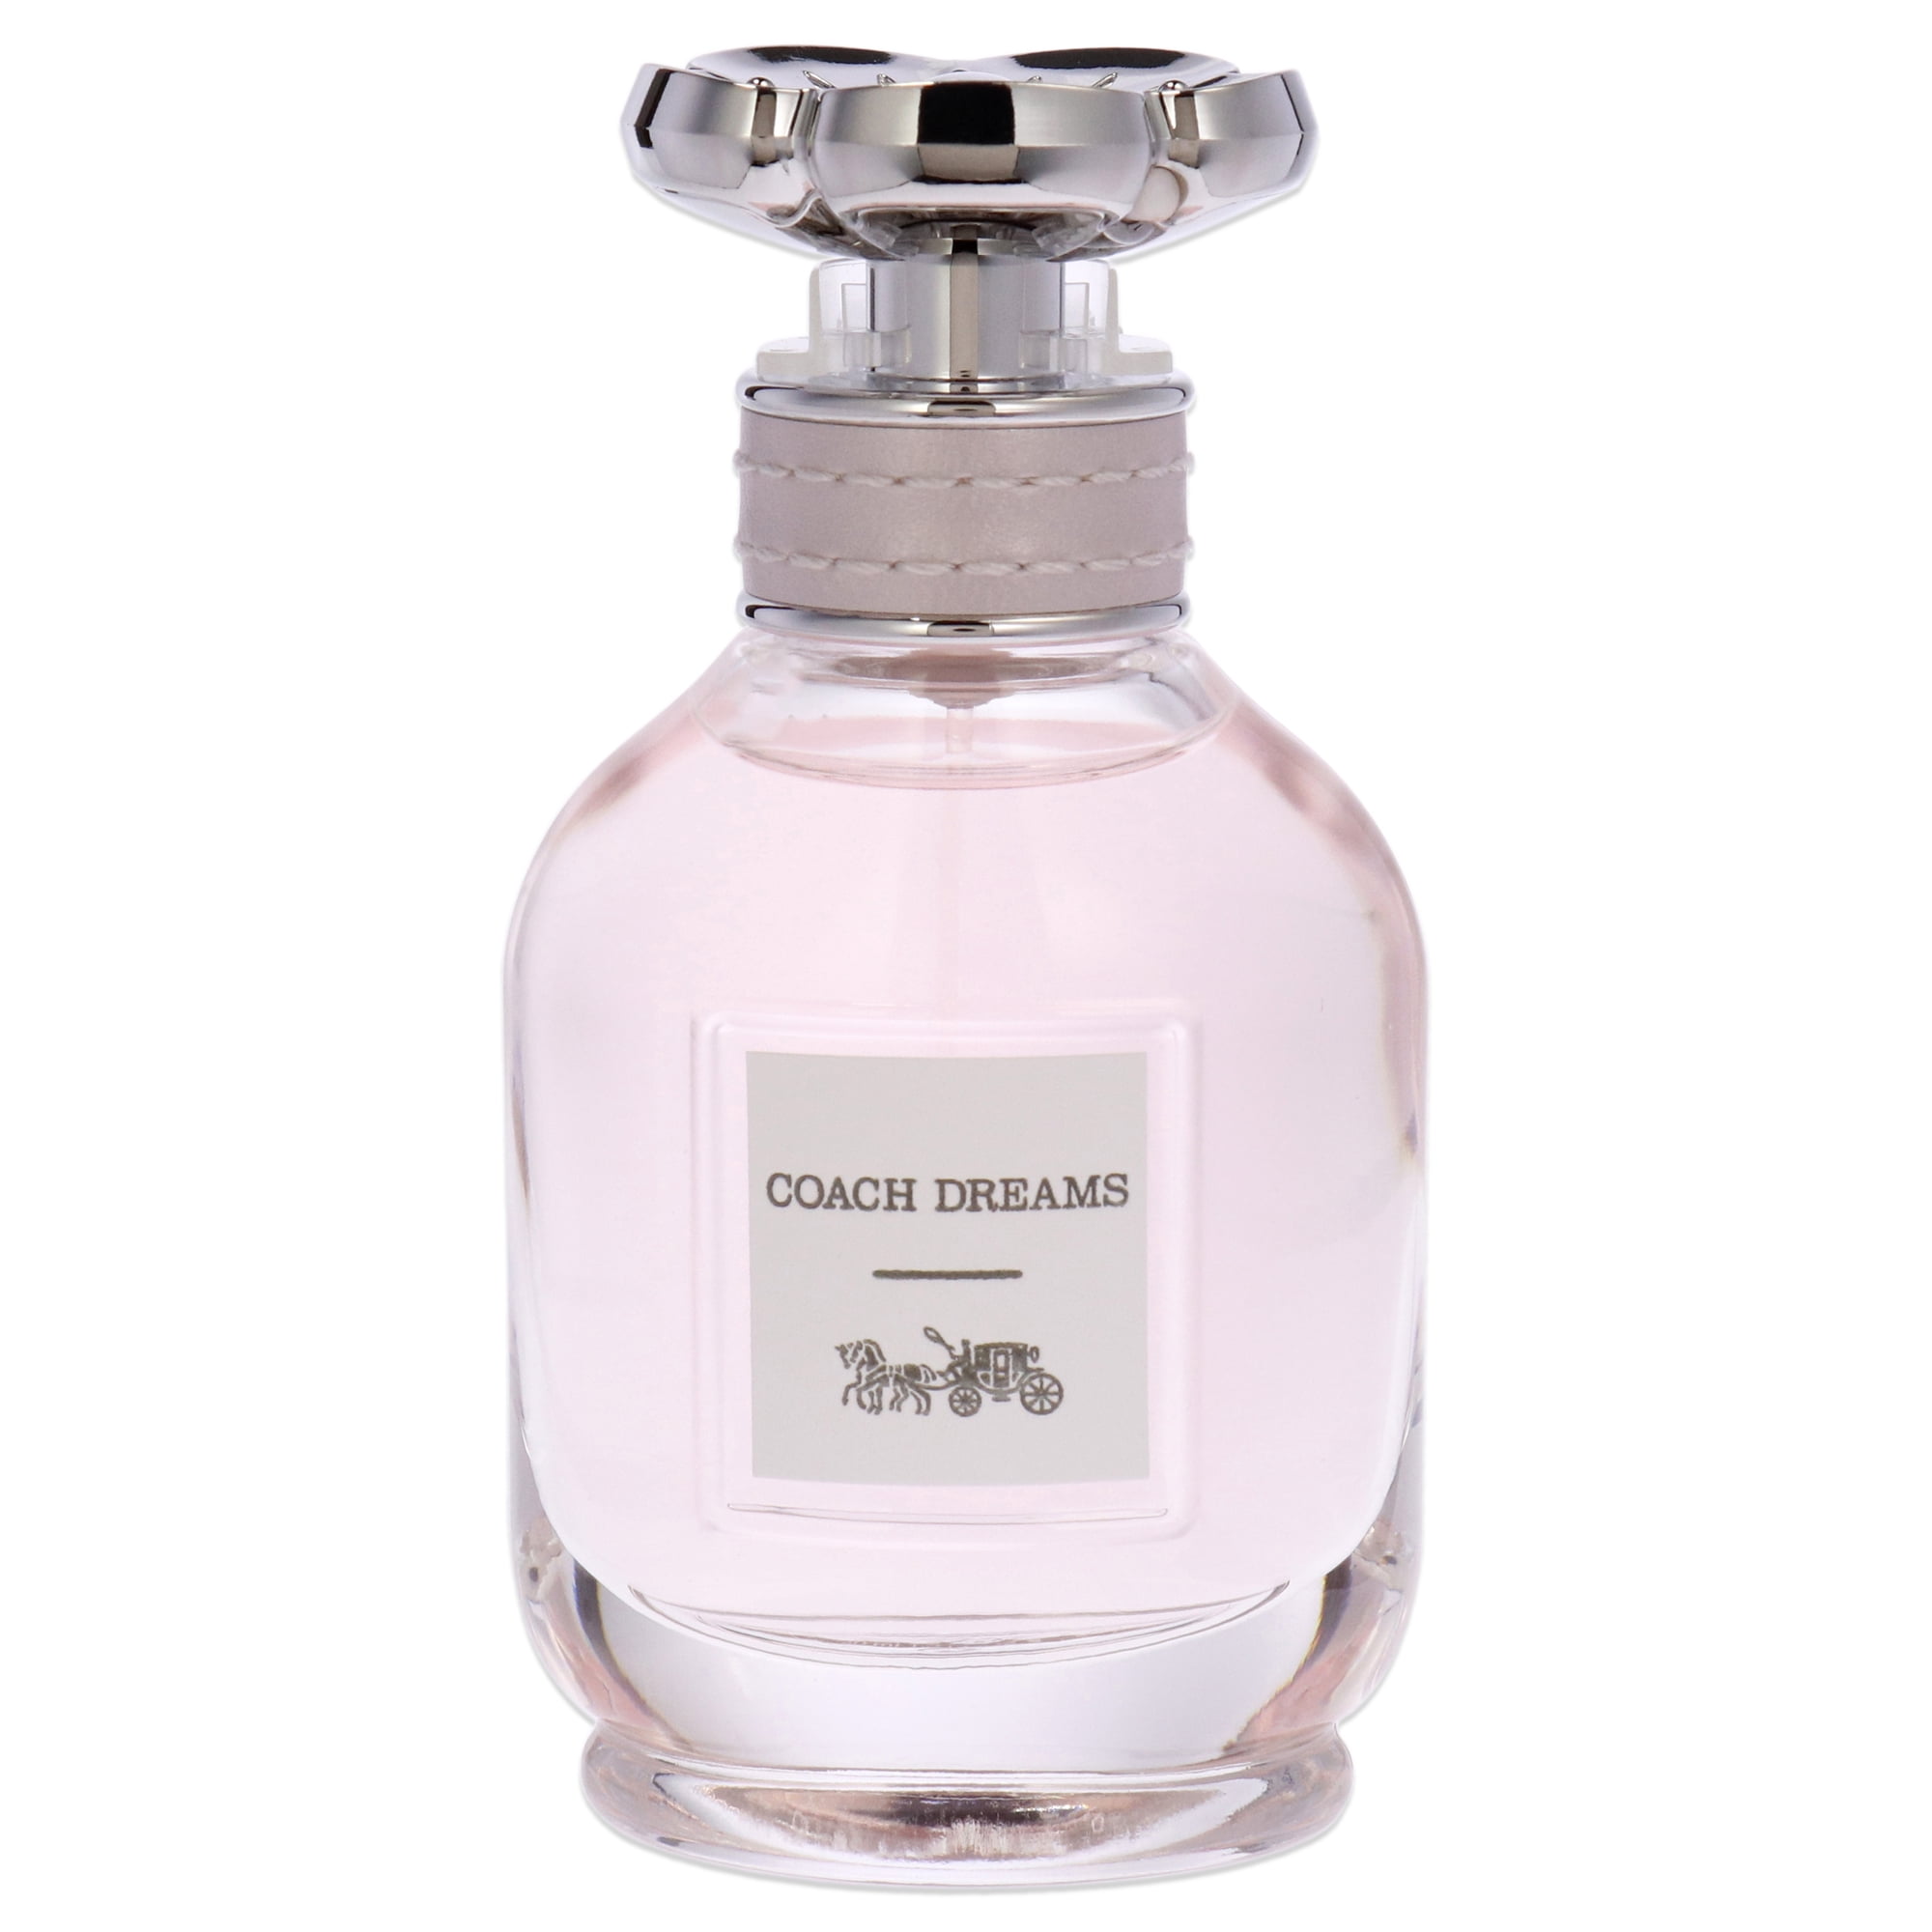 72 Value) Coach Dreams Eau de Parfum, Perfume for Women,  Oz -  